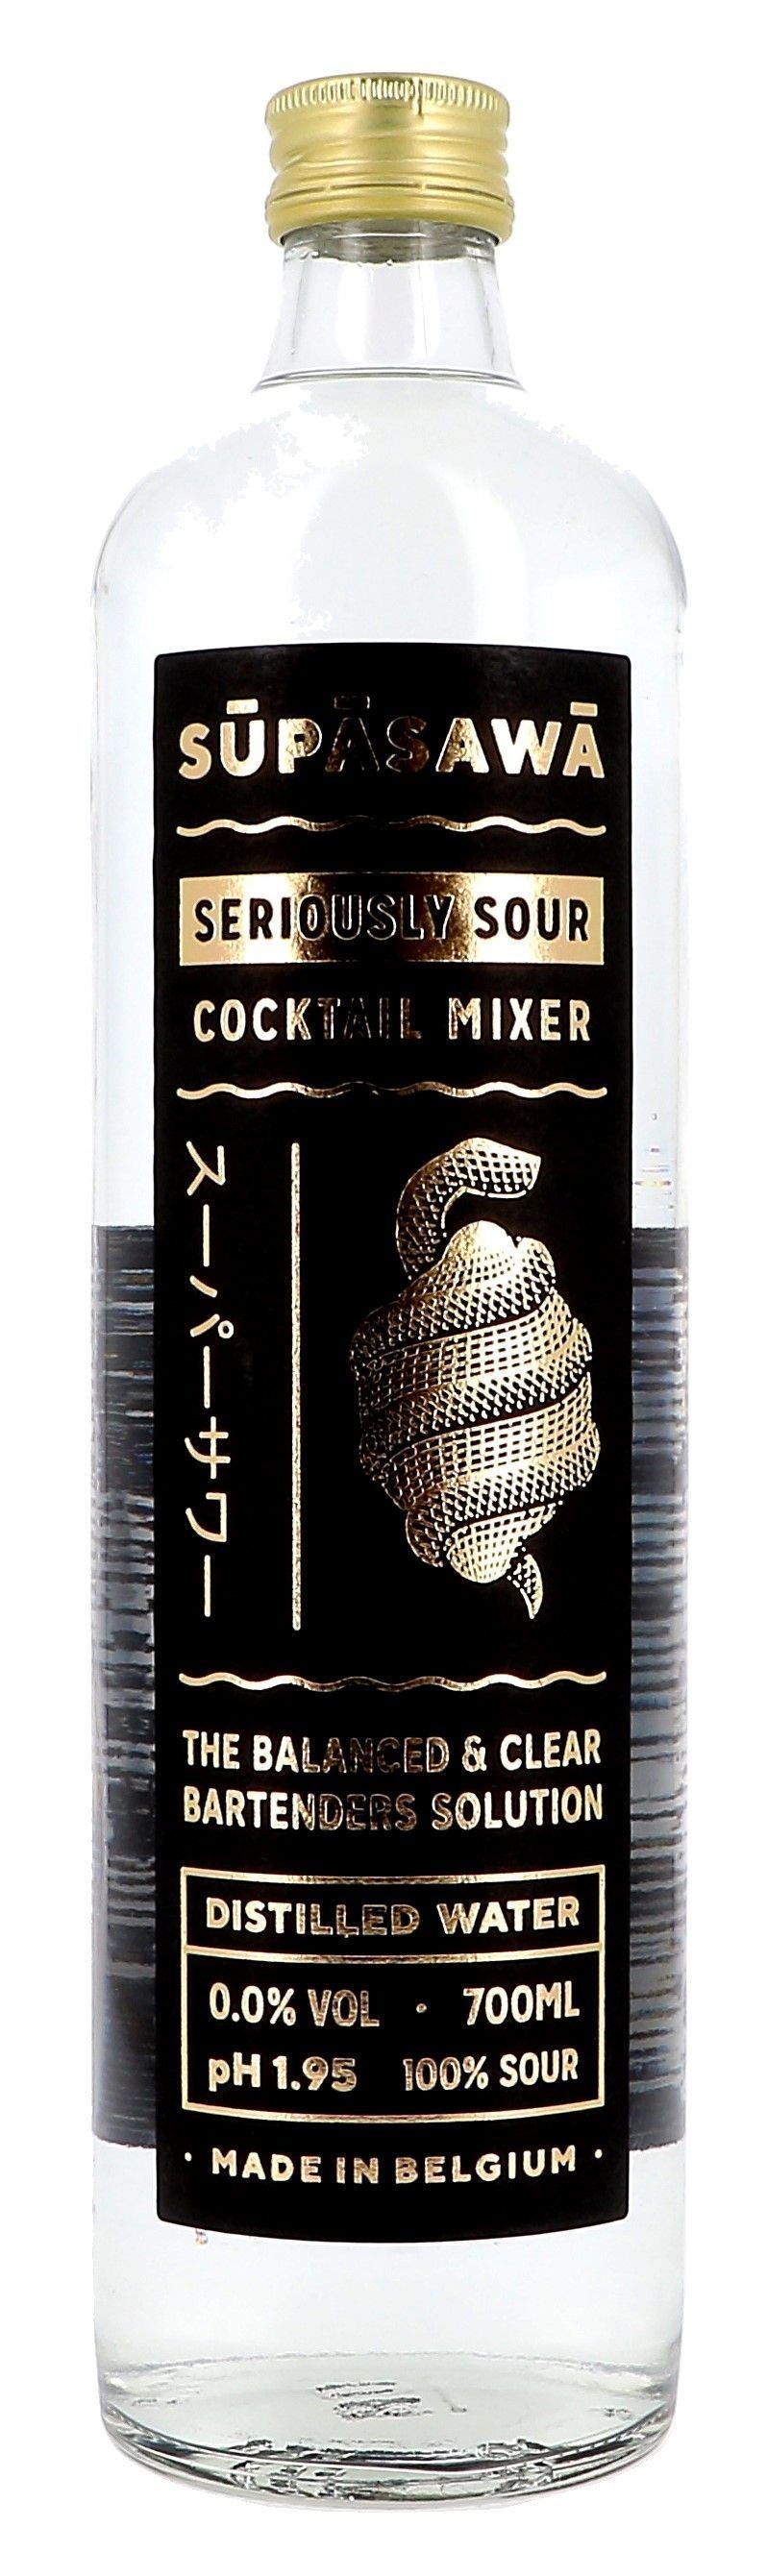 Supasawa 70cl Seriously Sour Cocktail Mixer Liqueur